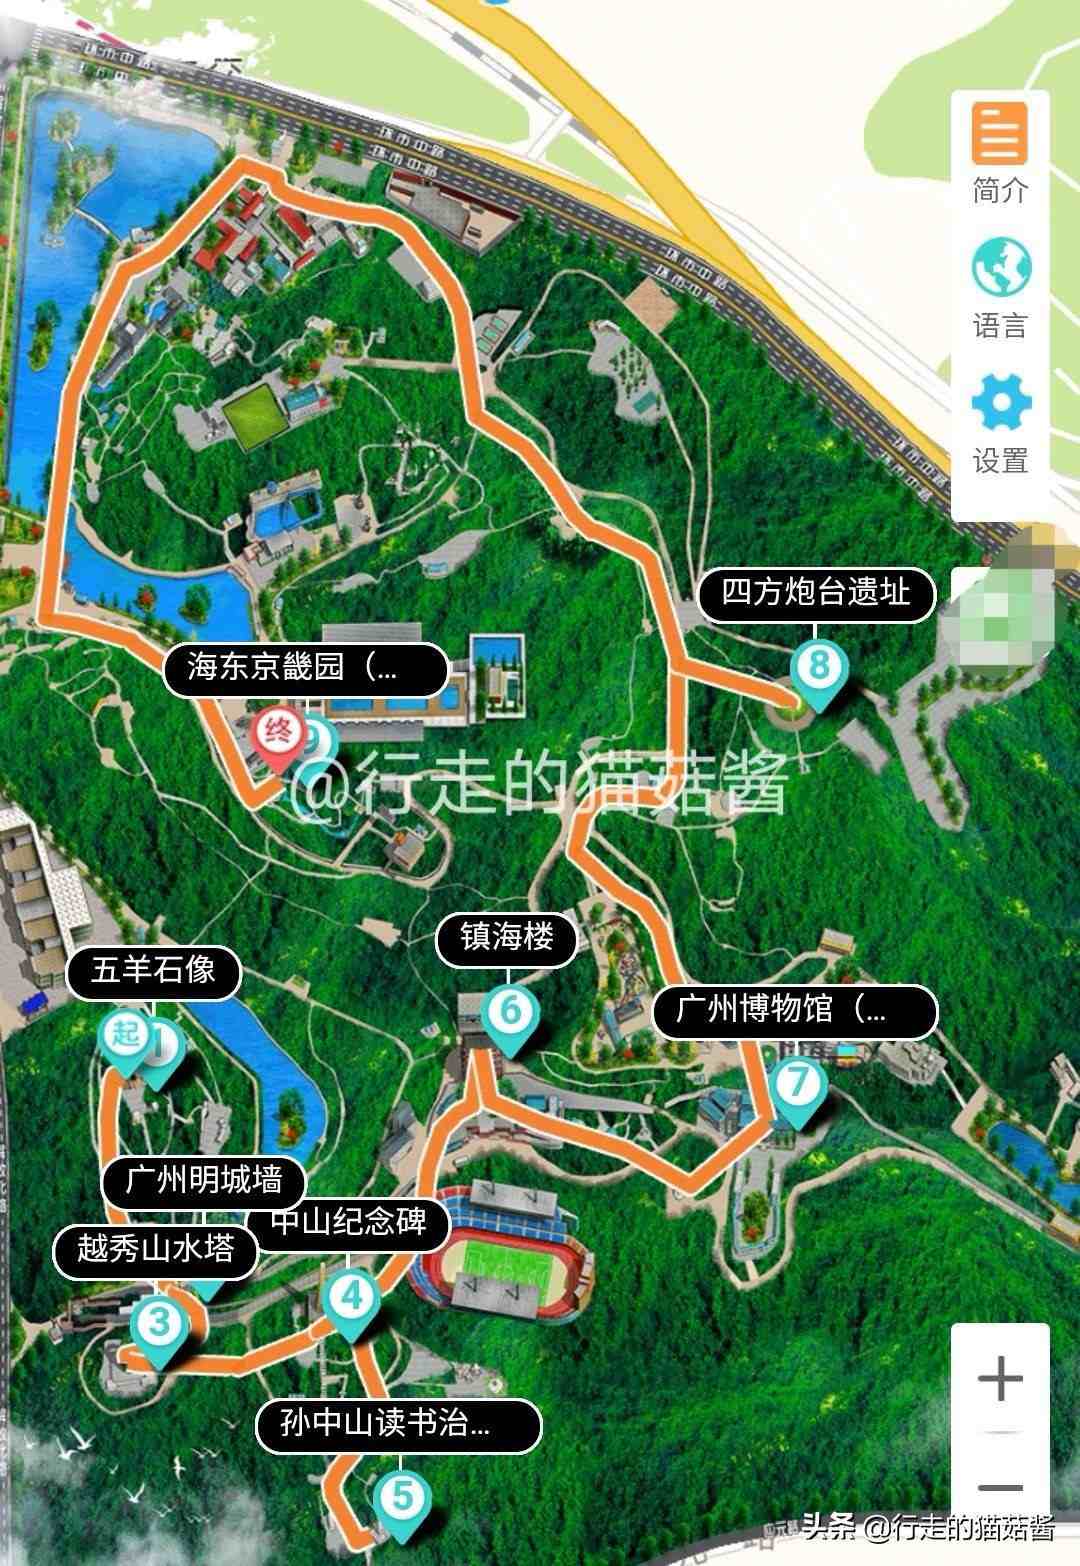 广州越秀公园游览路线推荐，深度游玩拍照攻略